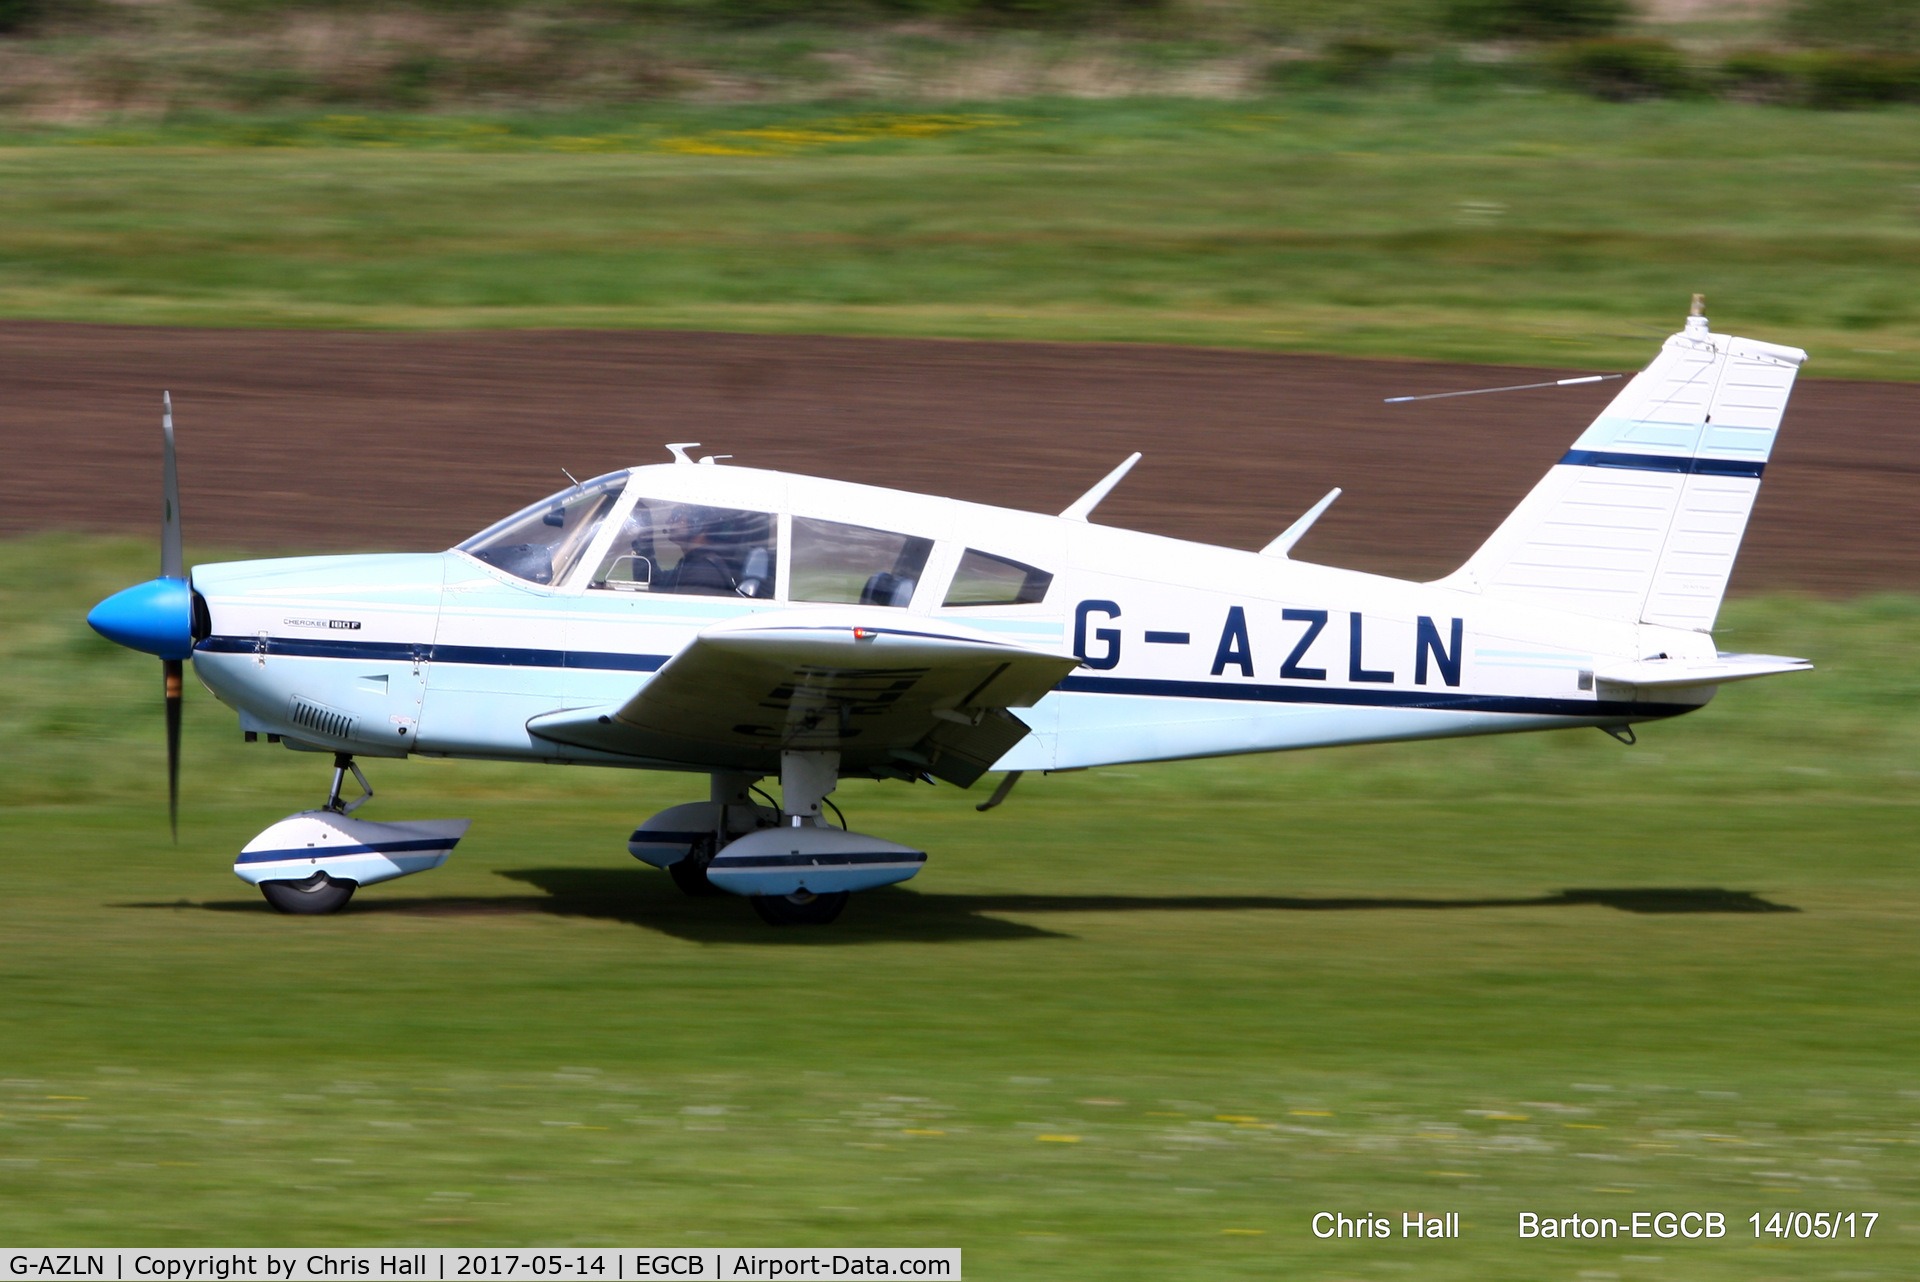 G-AZLN, 1971 Piper PA-28-180 Cherokee C/N 28-7105210, at Barton